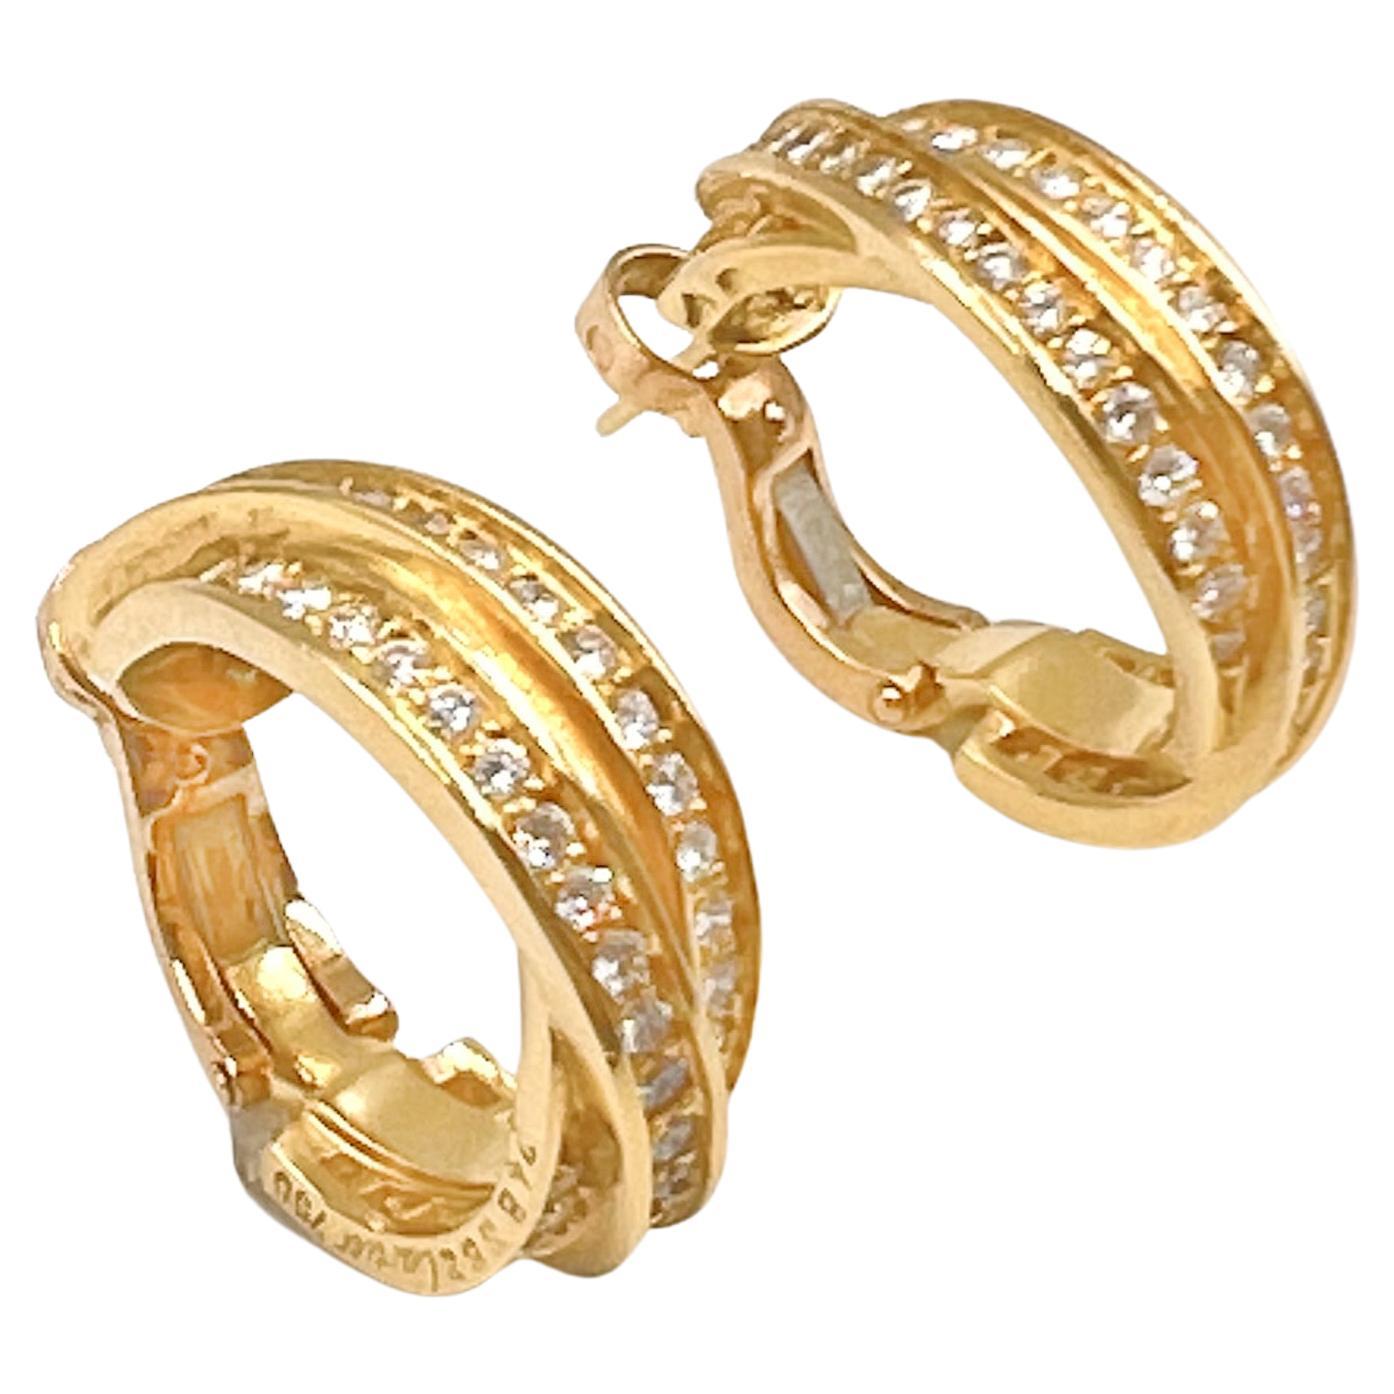 Cartier 18k Gelbgold Diamanten 'Trinity' Reif Ohrringe. Dreiviertel-Reifen-Design mit einer Dreier-Reihe runder Diamanten im Brillantschliff mit einem Gesamtgewicht von 1,23 Karat (Farbe G-H, Reinheit VVS-VS).  Durchbrochene Pfosten mit